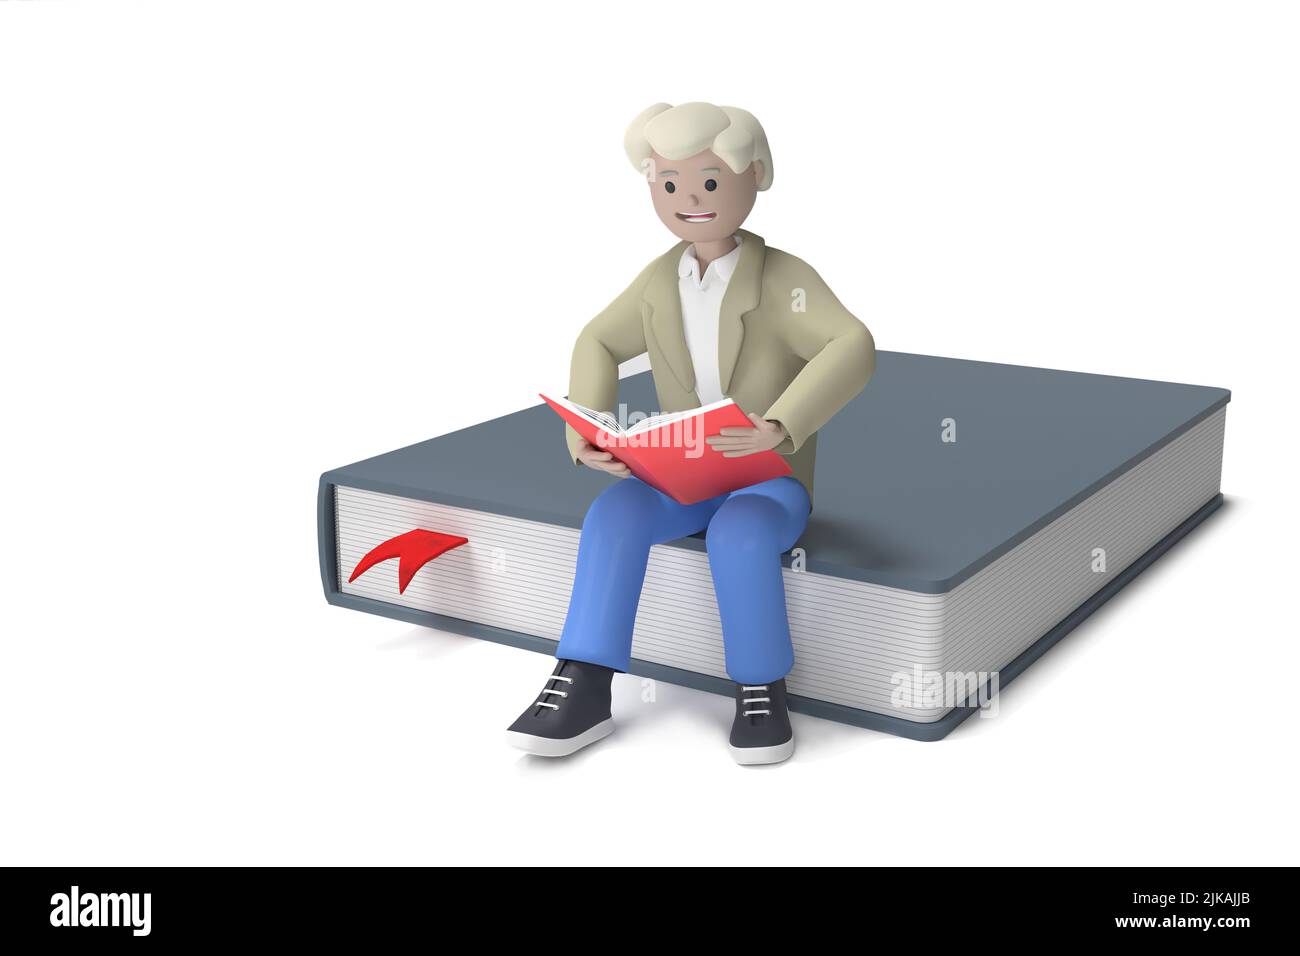 Concepto de lectura. Hombre sosteniendo un libro y sentado en un libro grande - ilustración de 3D Foto de stock